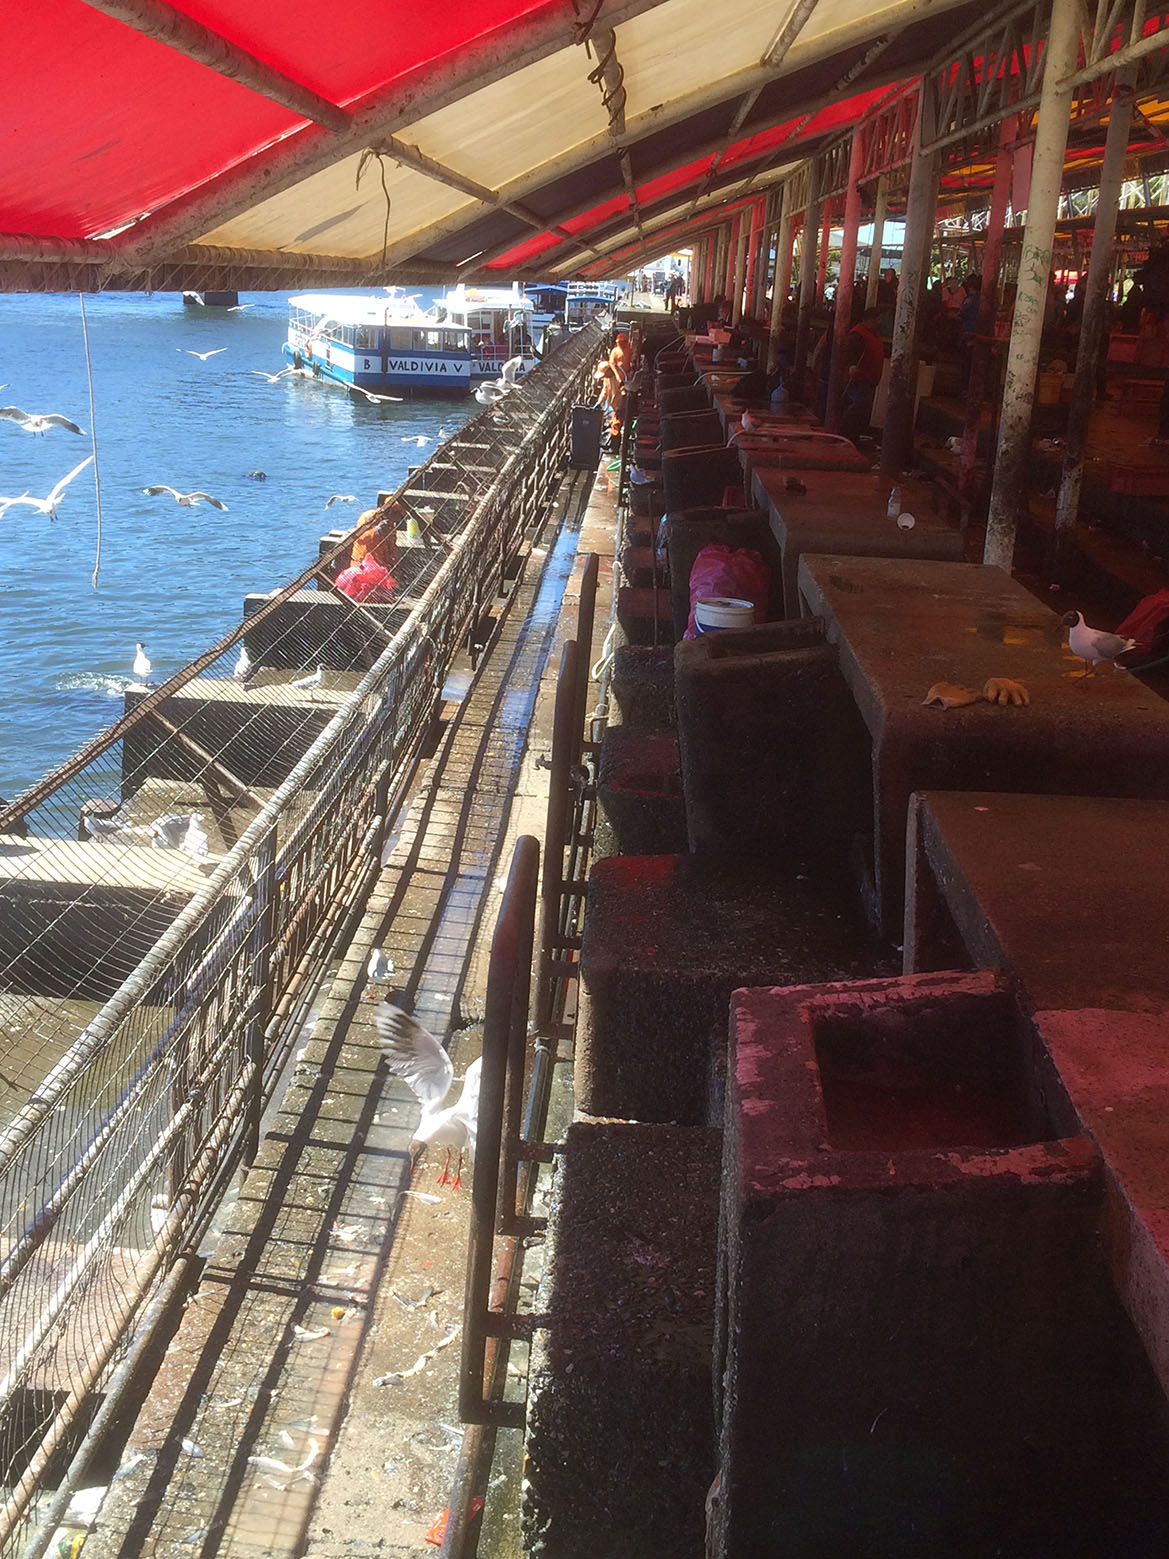 Fischmarkt in Valdivia - 2